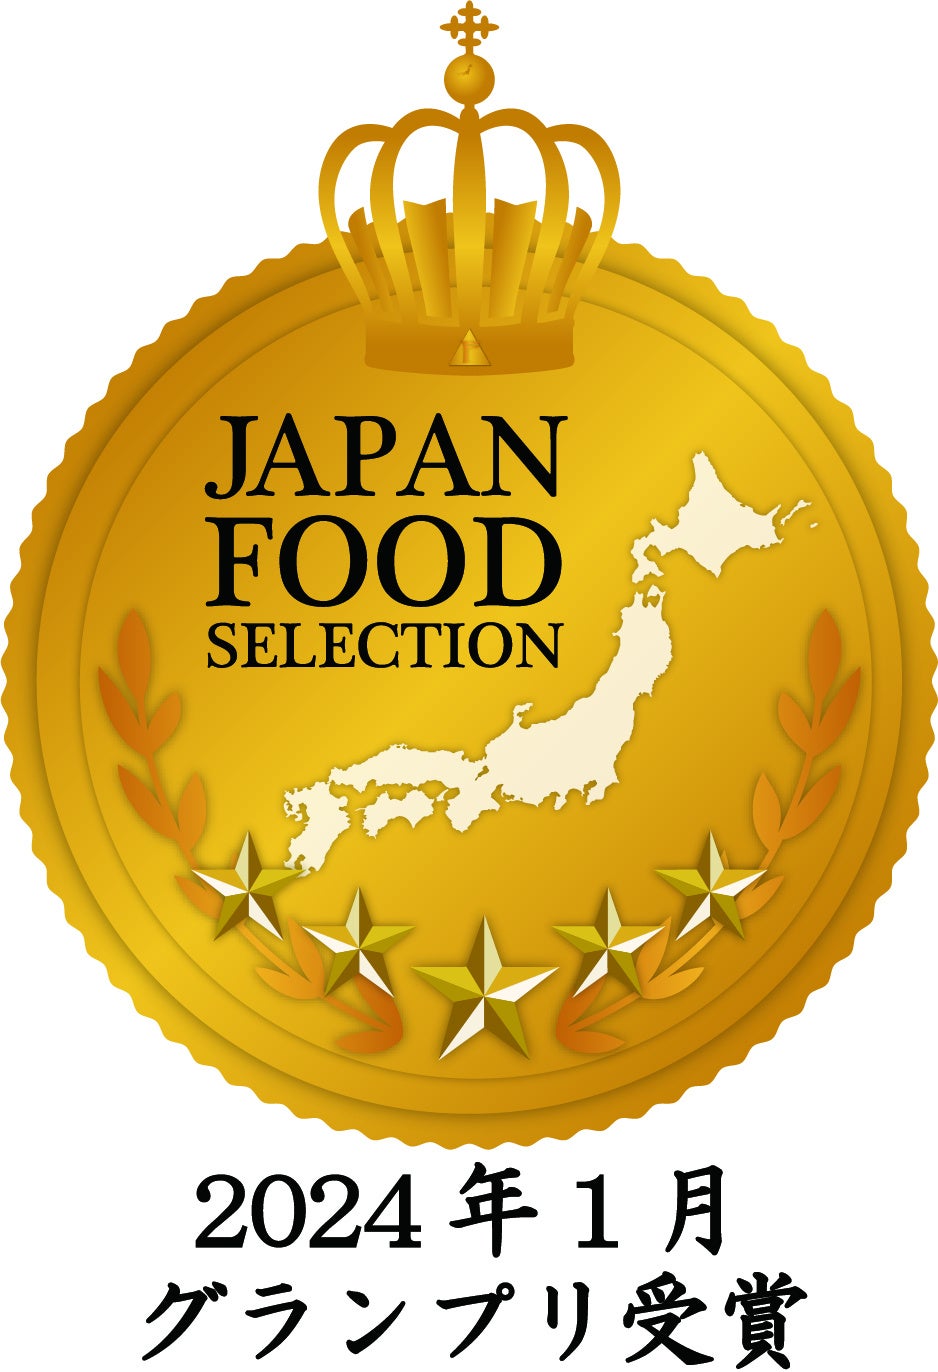 「わたしのフルーツパーラー」のフルーツサンド「グラシアスマンゴー フルーツサンド」が第71回ジャパン・フード・セレクションでグランプリ賞を受賞いたしました！